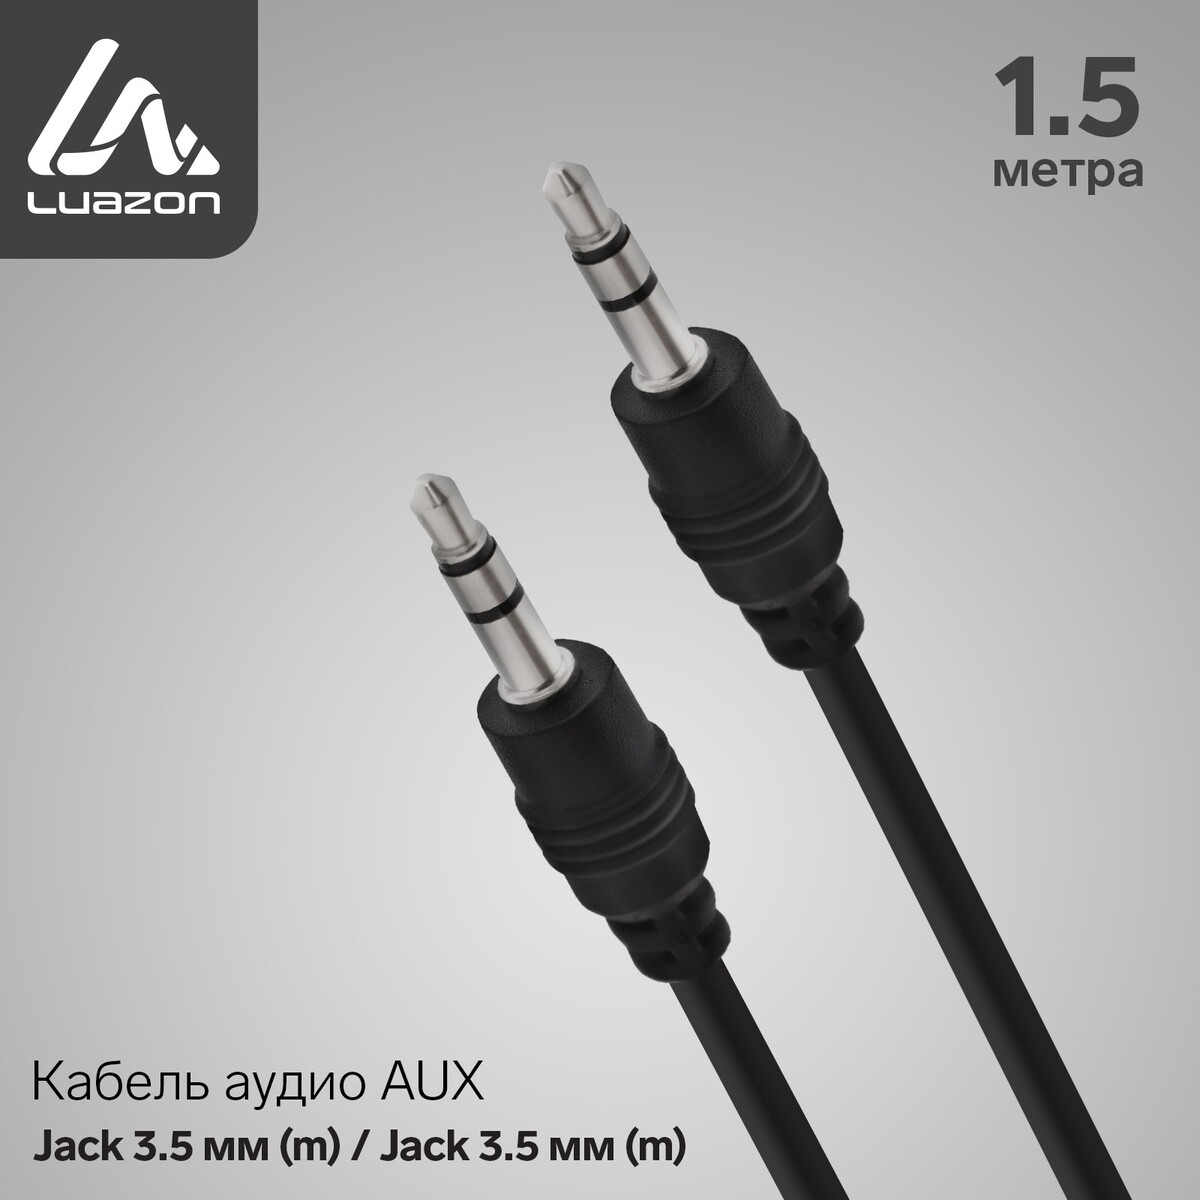 Кабель аудио aux luazon, jack 3.5 мм (m)-jack 3.5 мм (m), 1.5 м, черный кабель gembird 3 5 jack m 3 5 jack f 1 5m cca 423